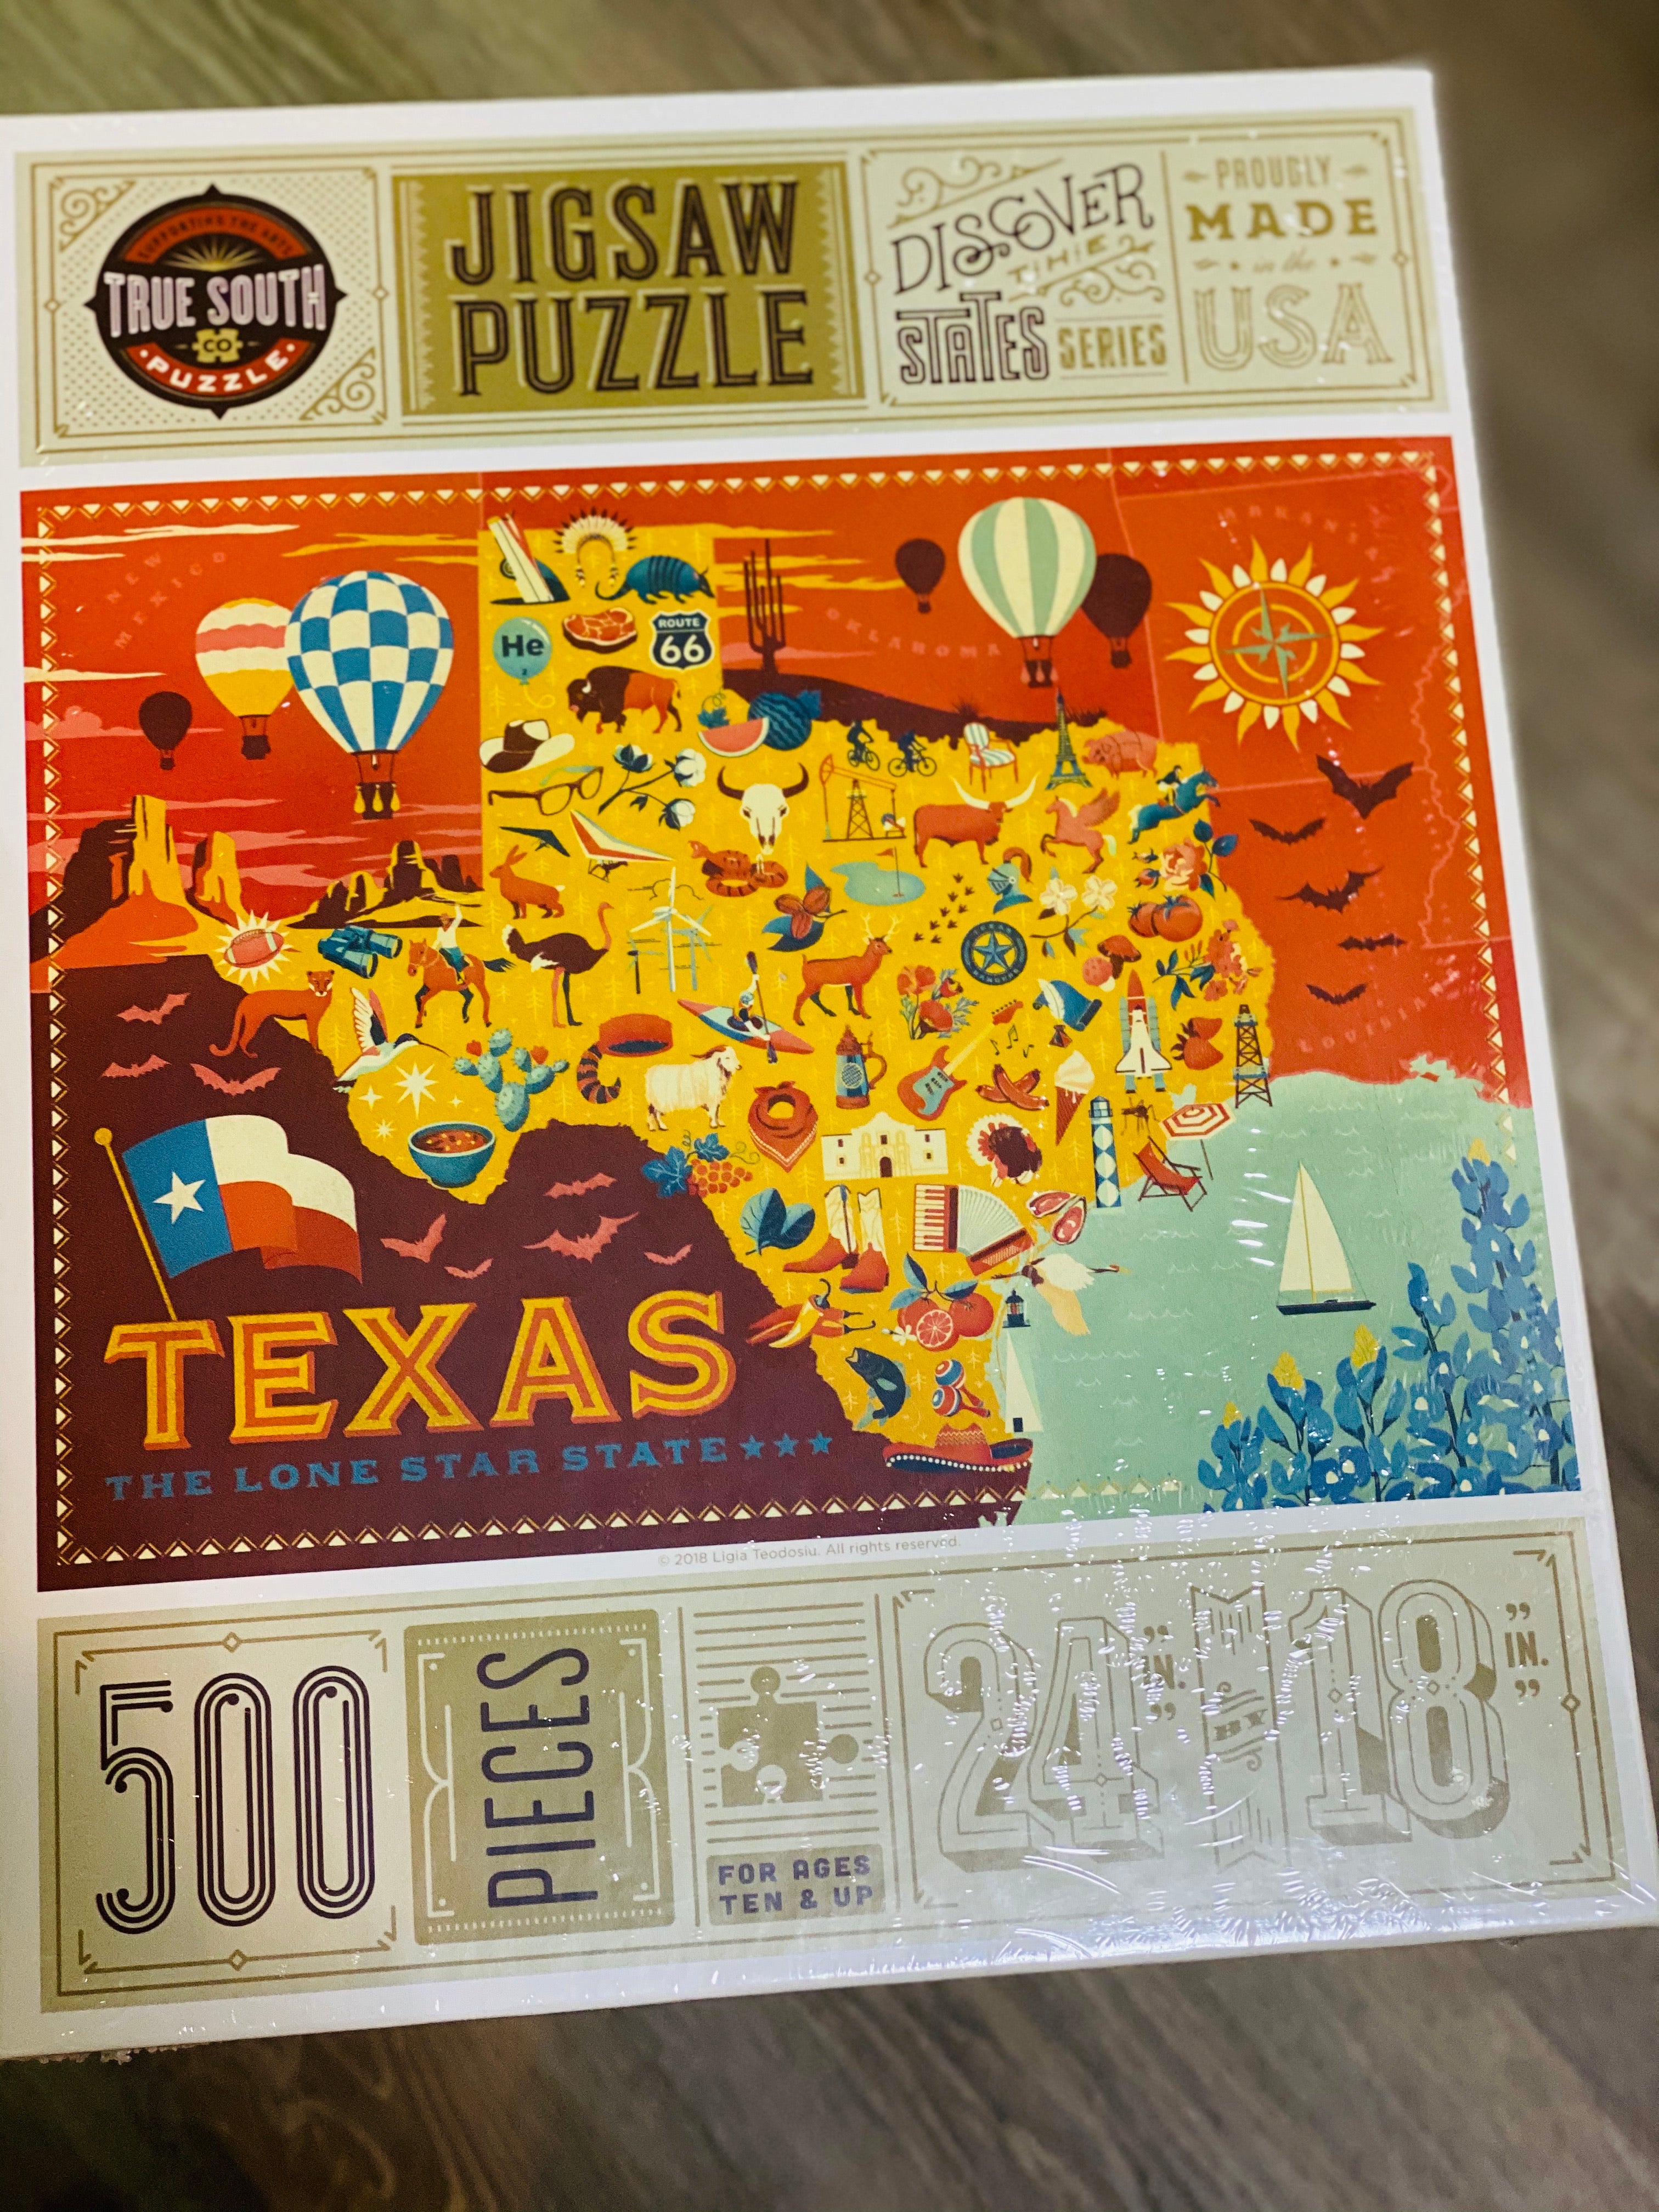 Texas 500 Piece Jigsaw Puzzle